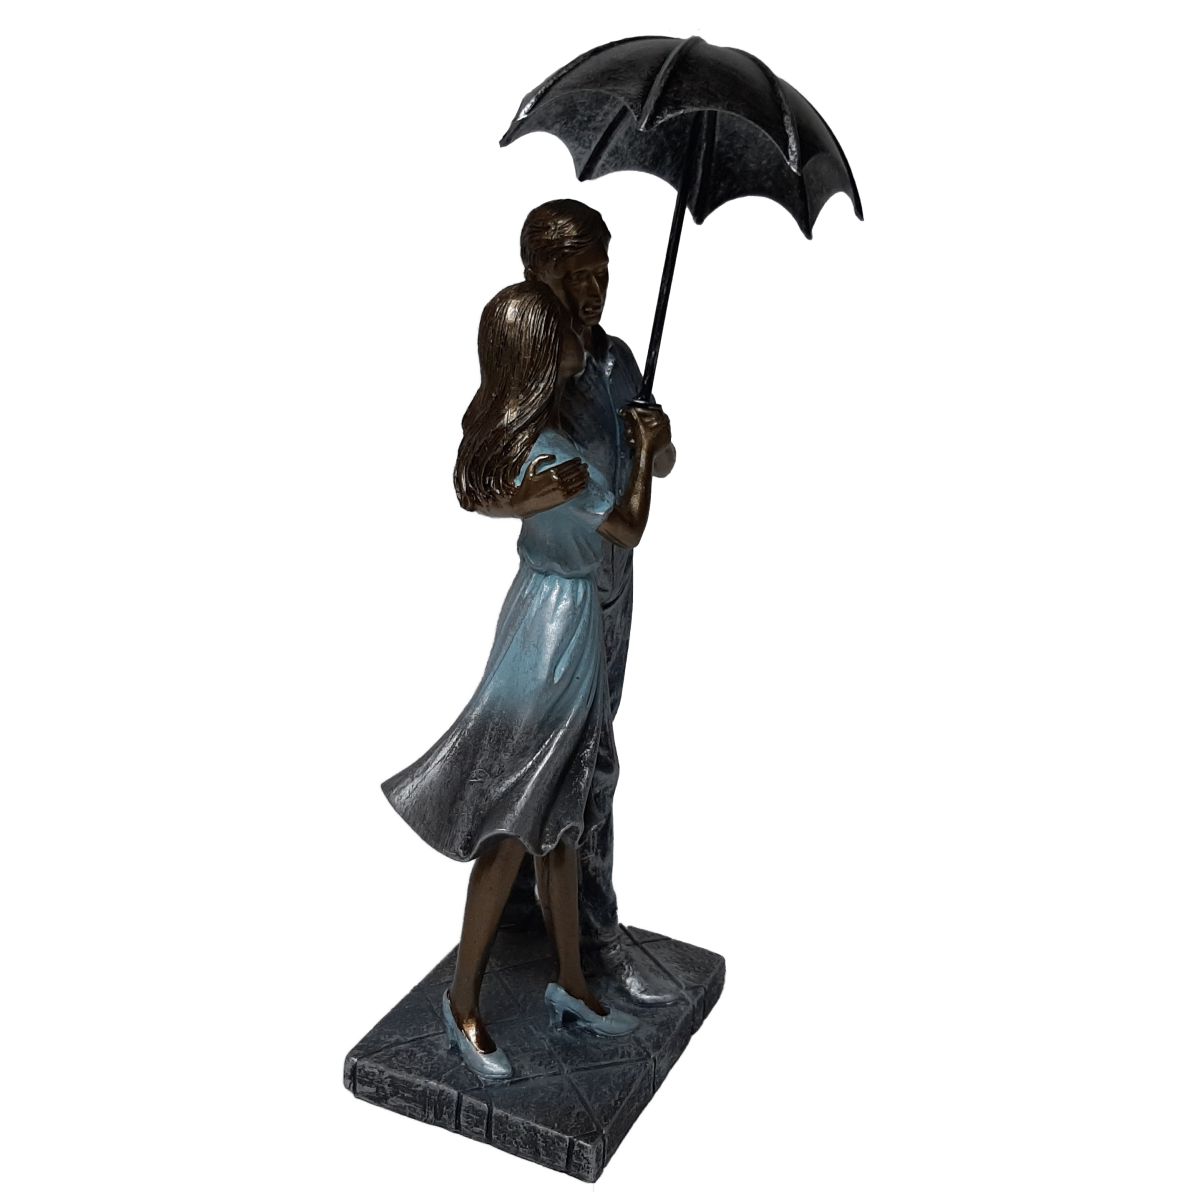 Verheugen Intiem Stationair Beeld liefde man en vrouw met paraplu staand